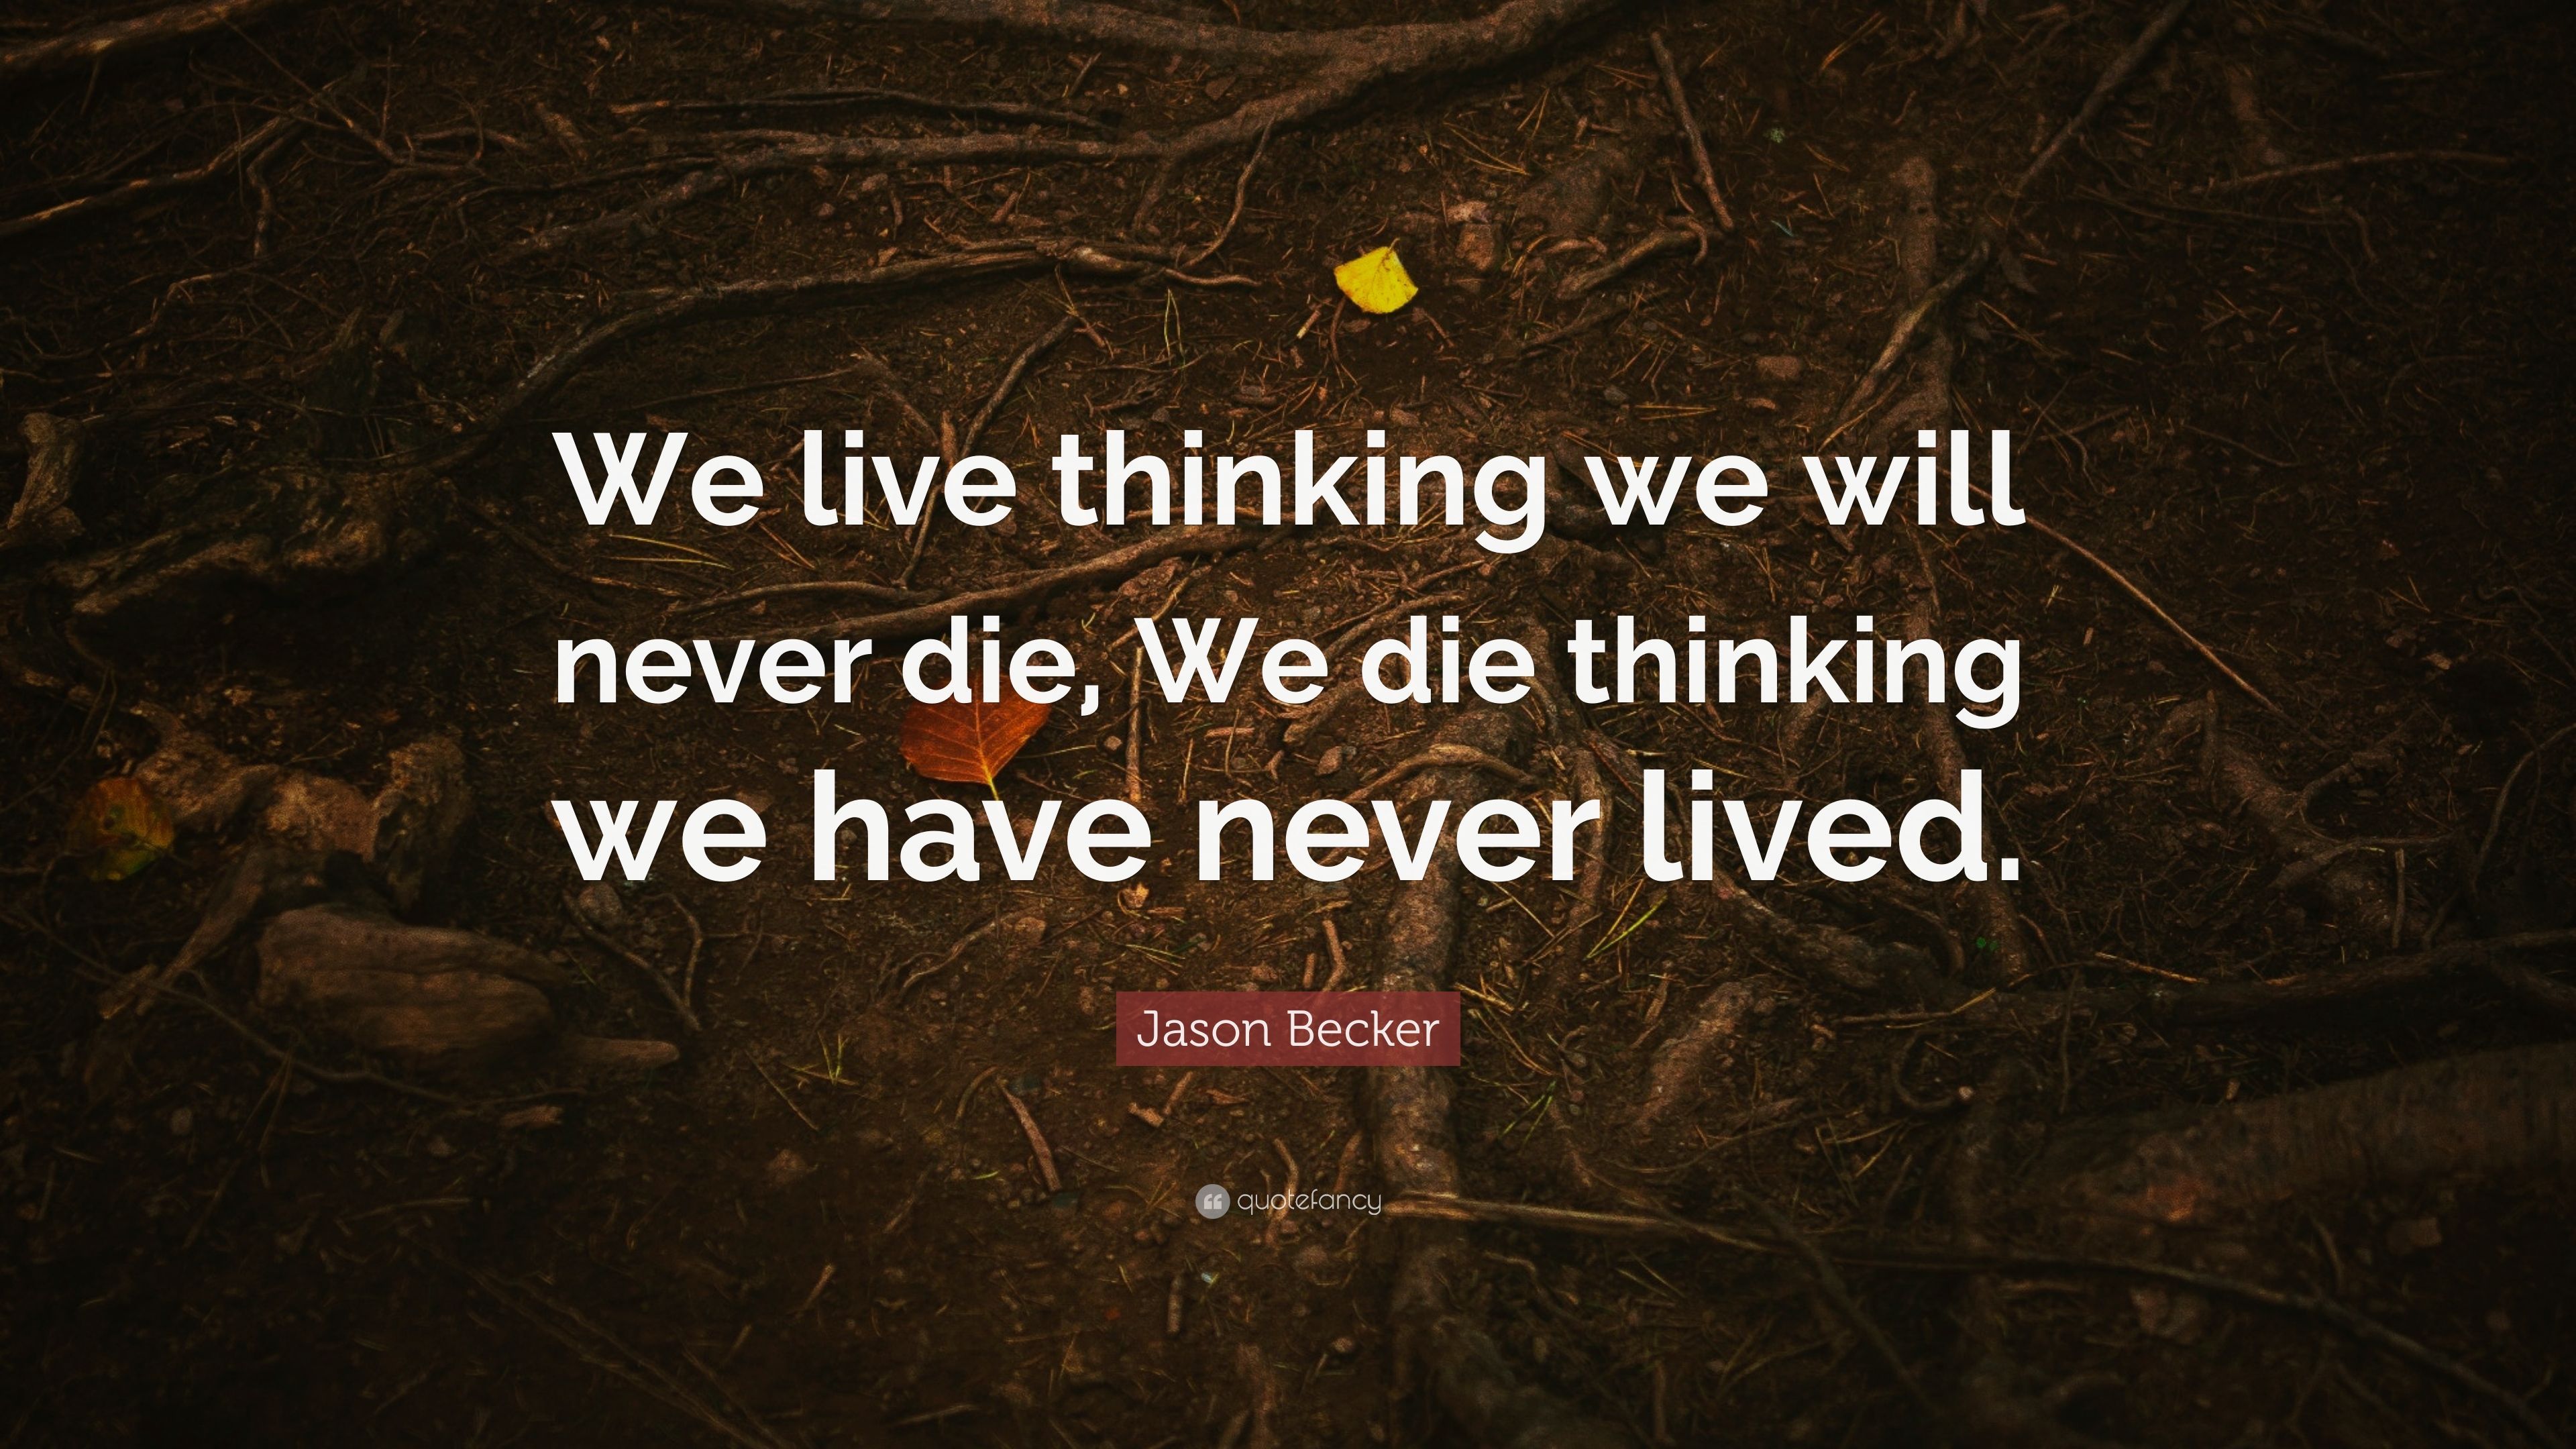 Jason Becker Quote: “We live thinking we will never die, We die